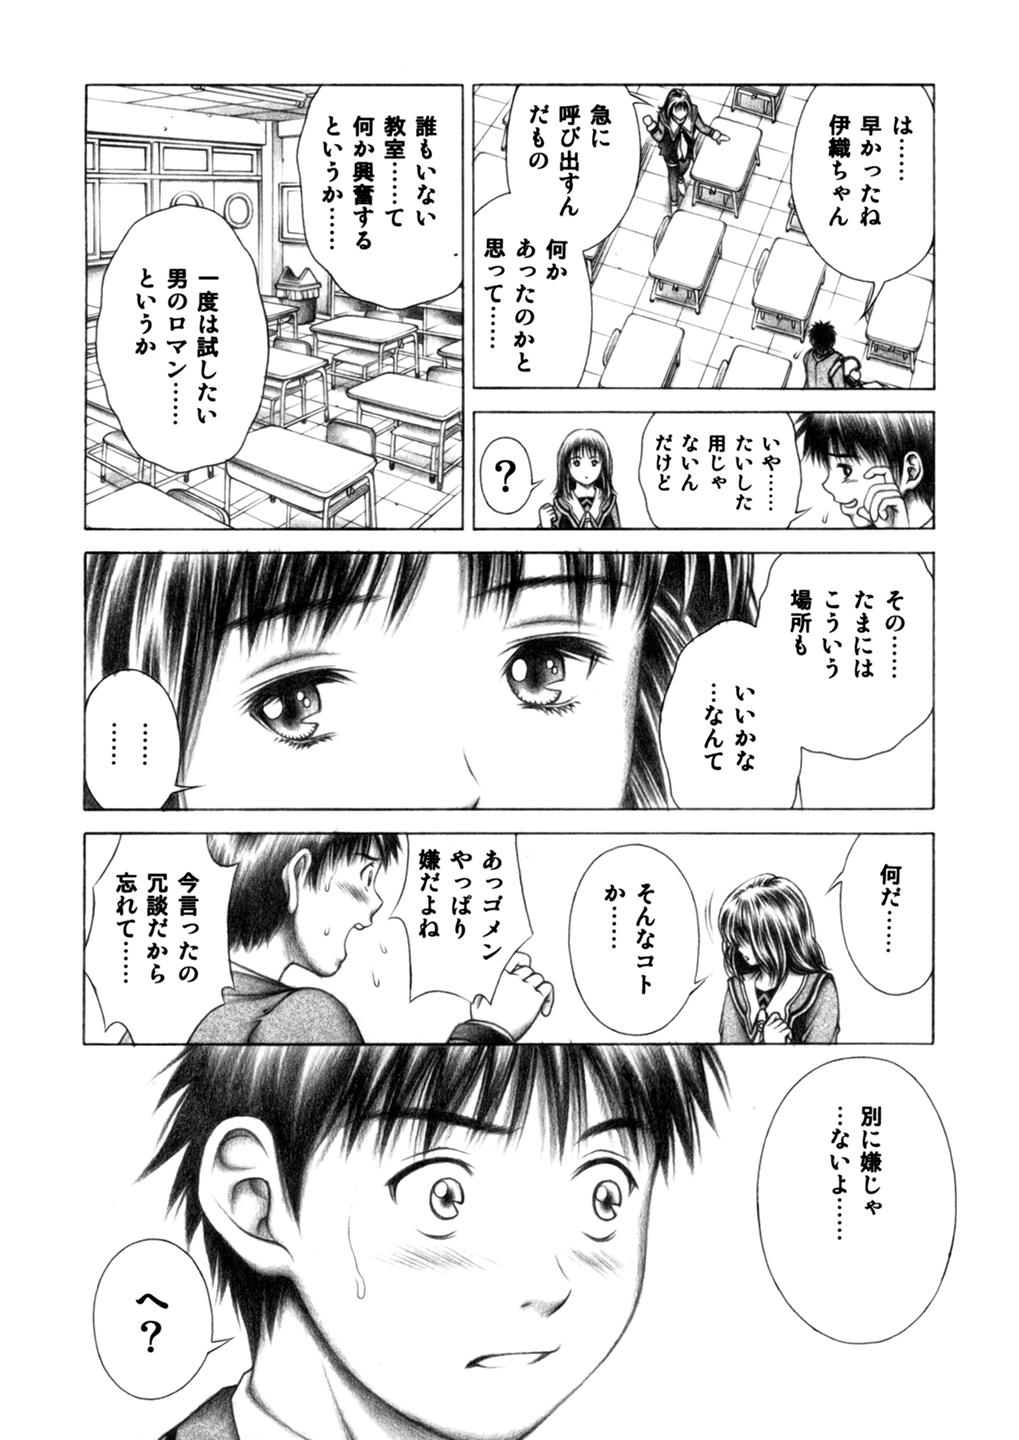 Rubia Iori to Fuwafuwarin - Is Comendo - Page 5